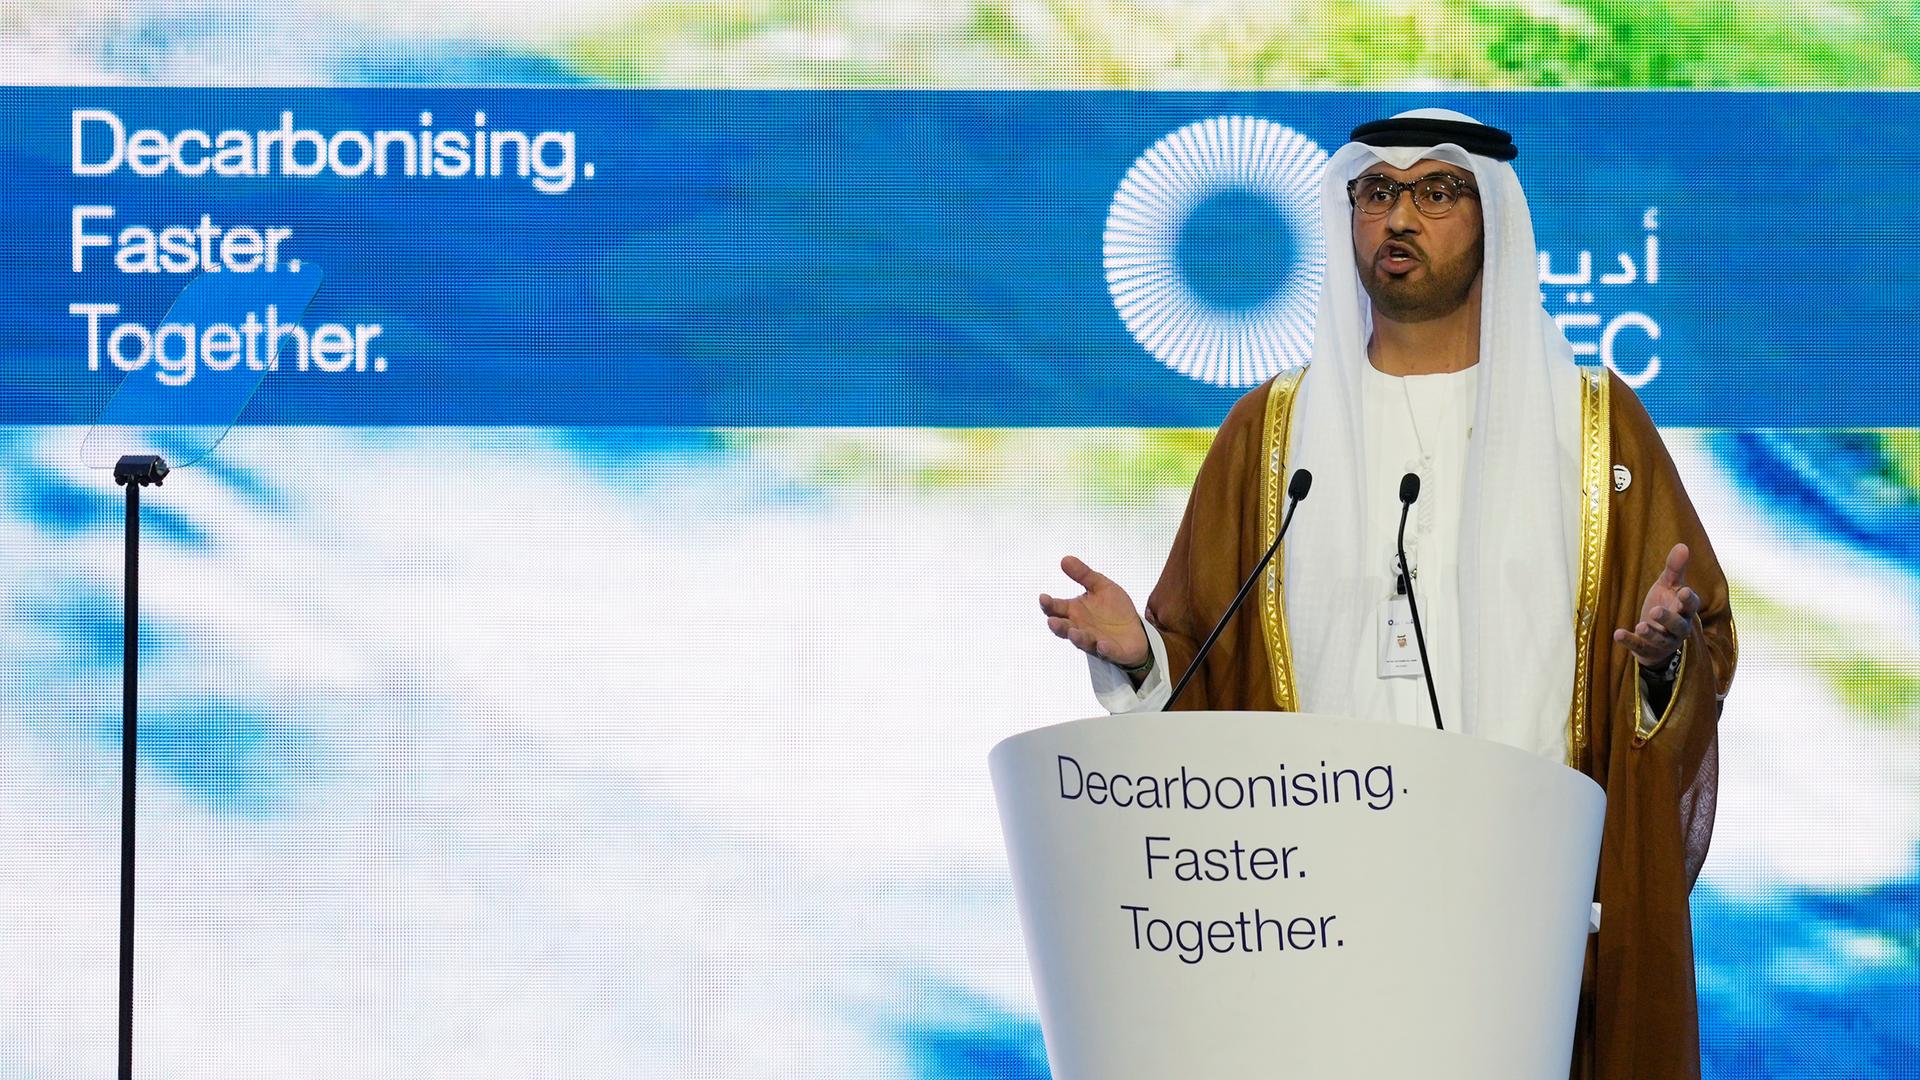 Sultan al-Jaber ist Präsident der UN-Klimakonferenz COP28 in Dubai und zugleich Chef der staatlichen Ölfirma adnoc dort.